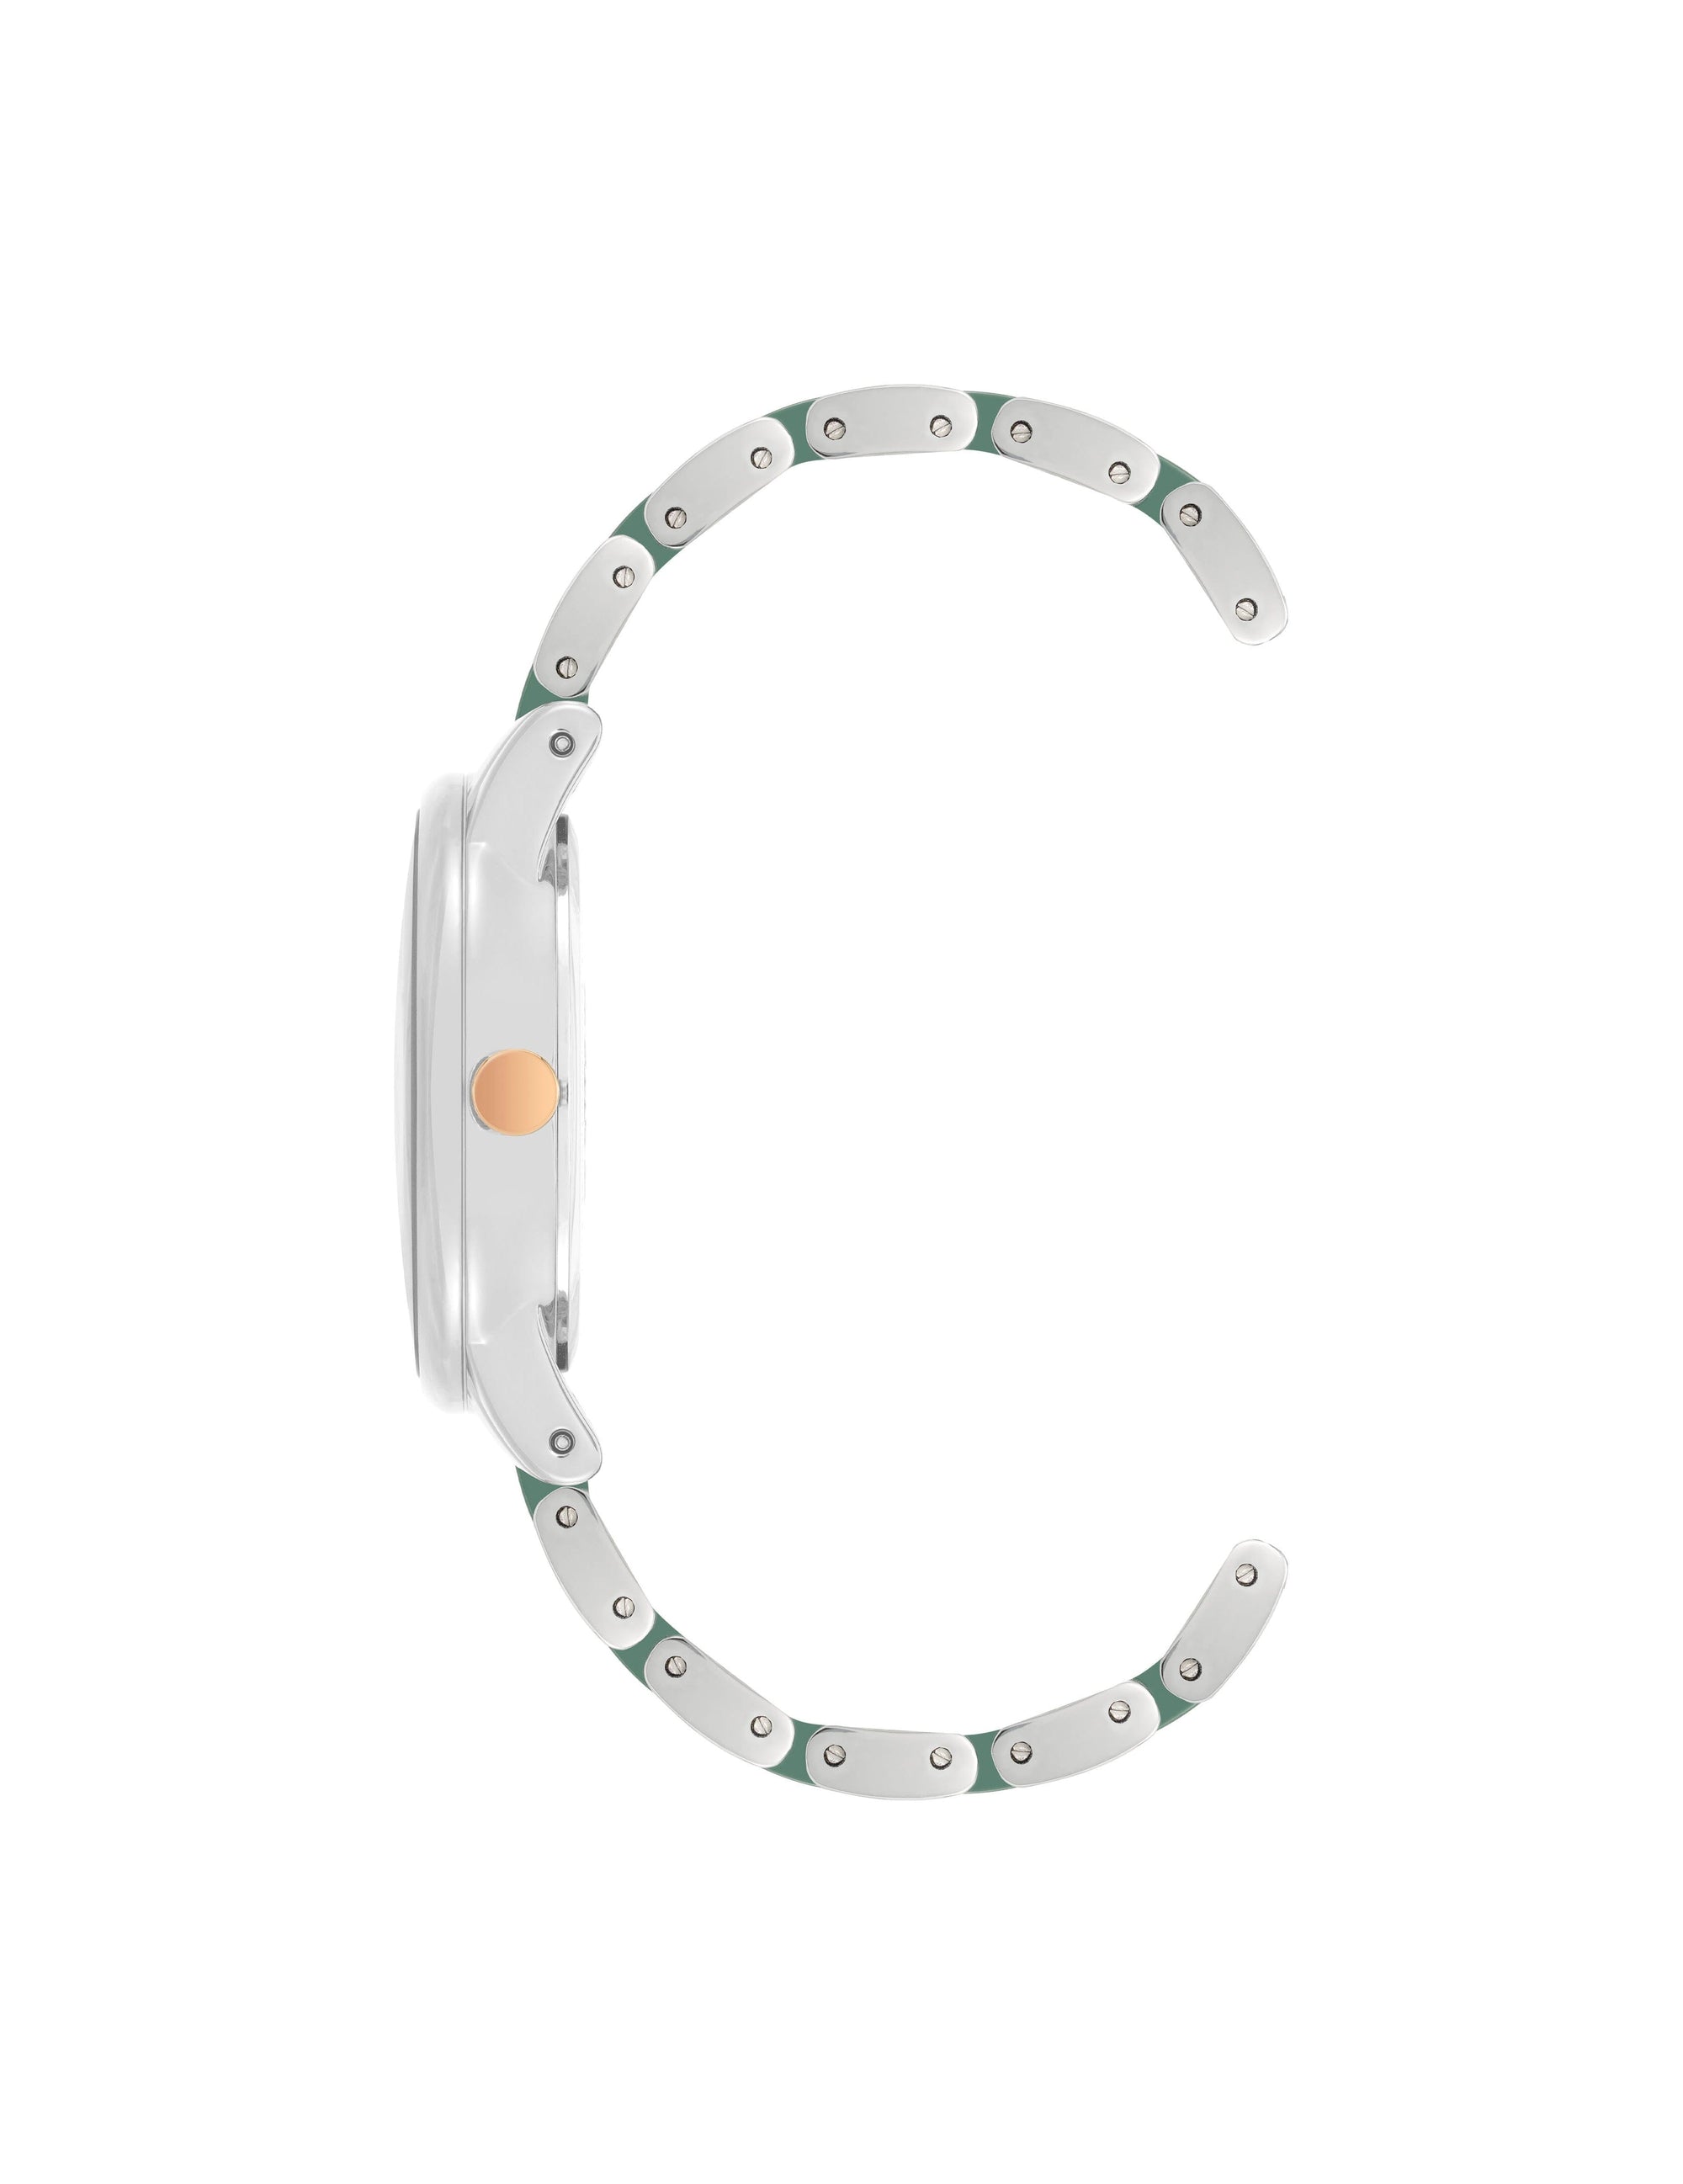 Anne Klein Silver-Tone/ Green Premium Crystal Ceramic Bracelet Watch